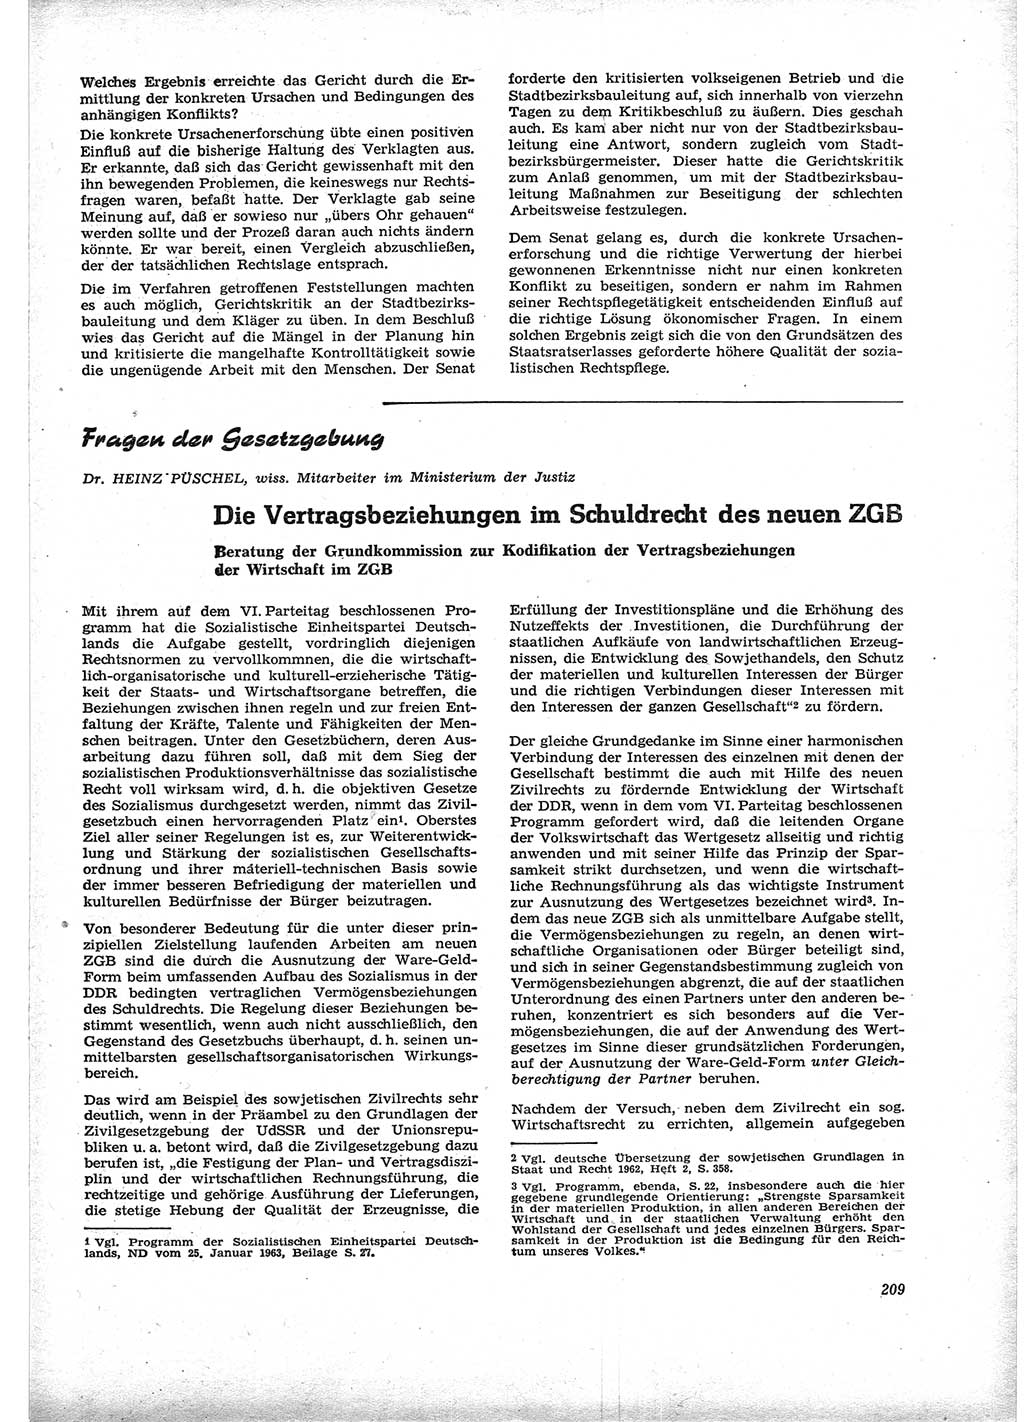 Neue Justiz (NJ), Zeitschrift für Recht und Rechtswissenschaft [Deutsche Demokratische Republik (DDR)], 17. Jahrgang 1963, Seite 209 (NJ DDR 1963, S. 209)